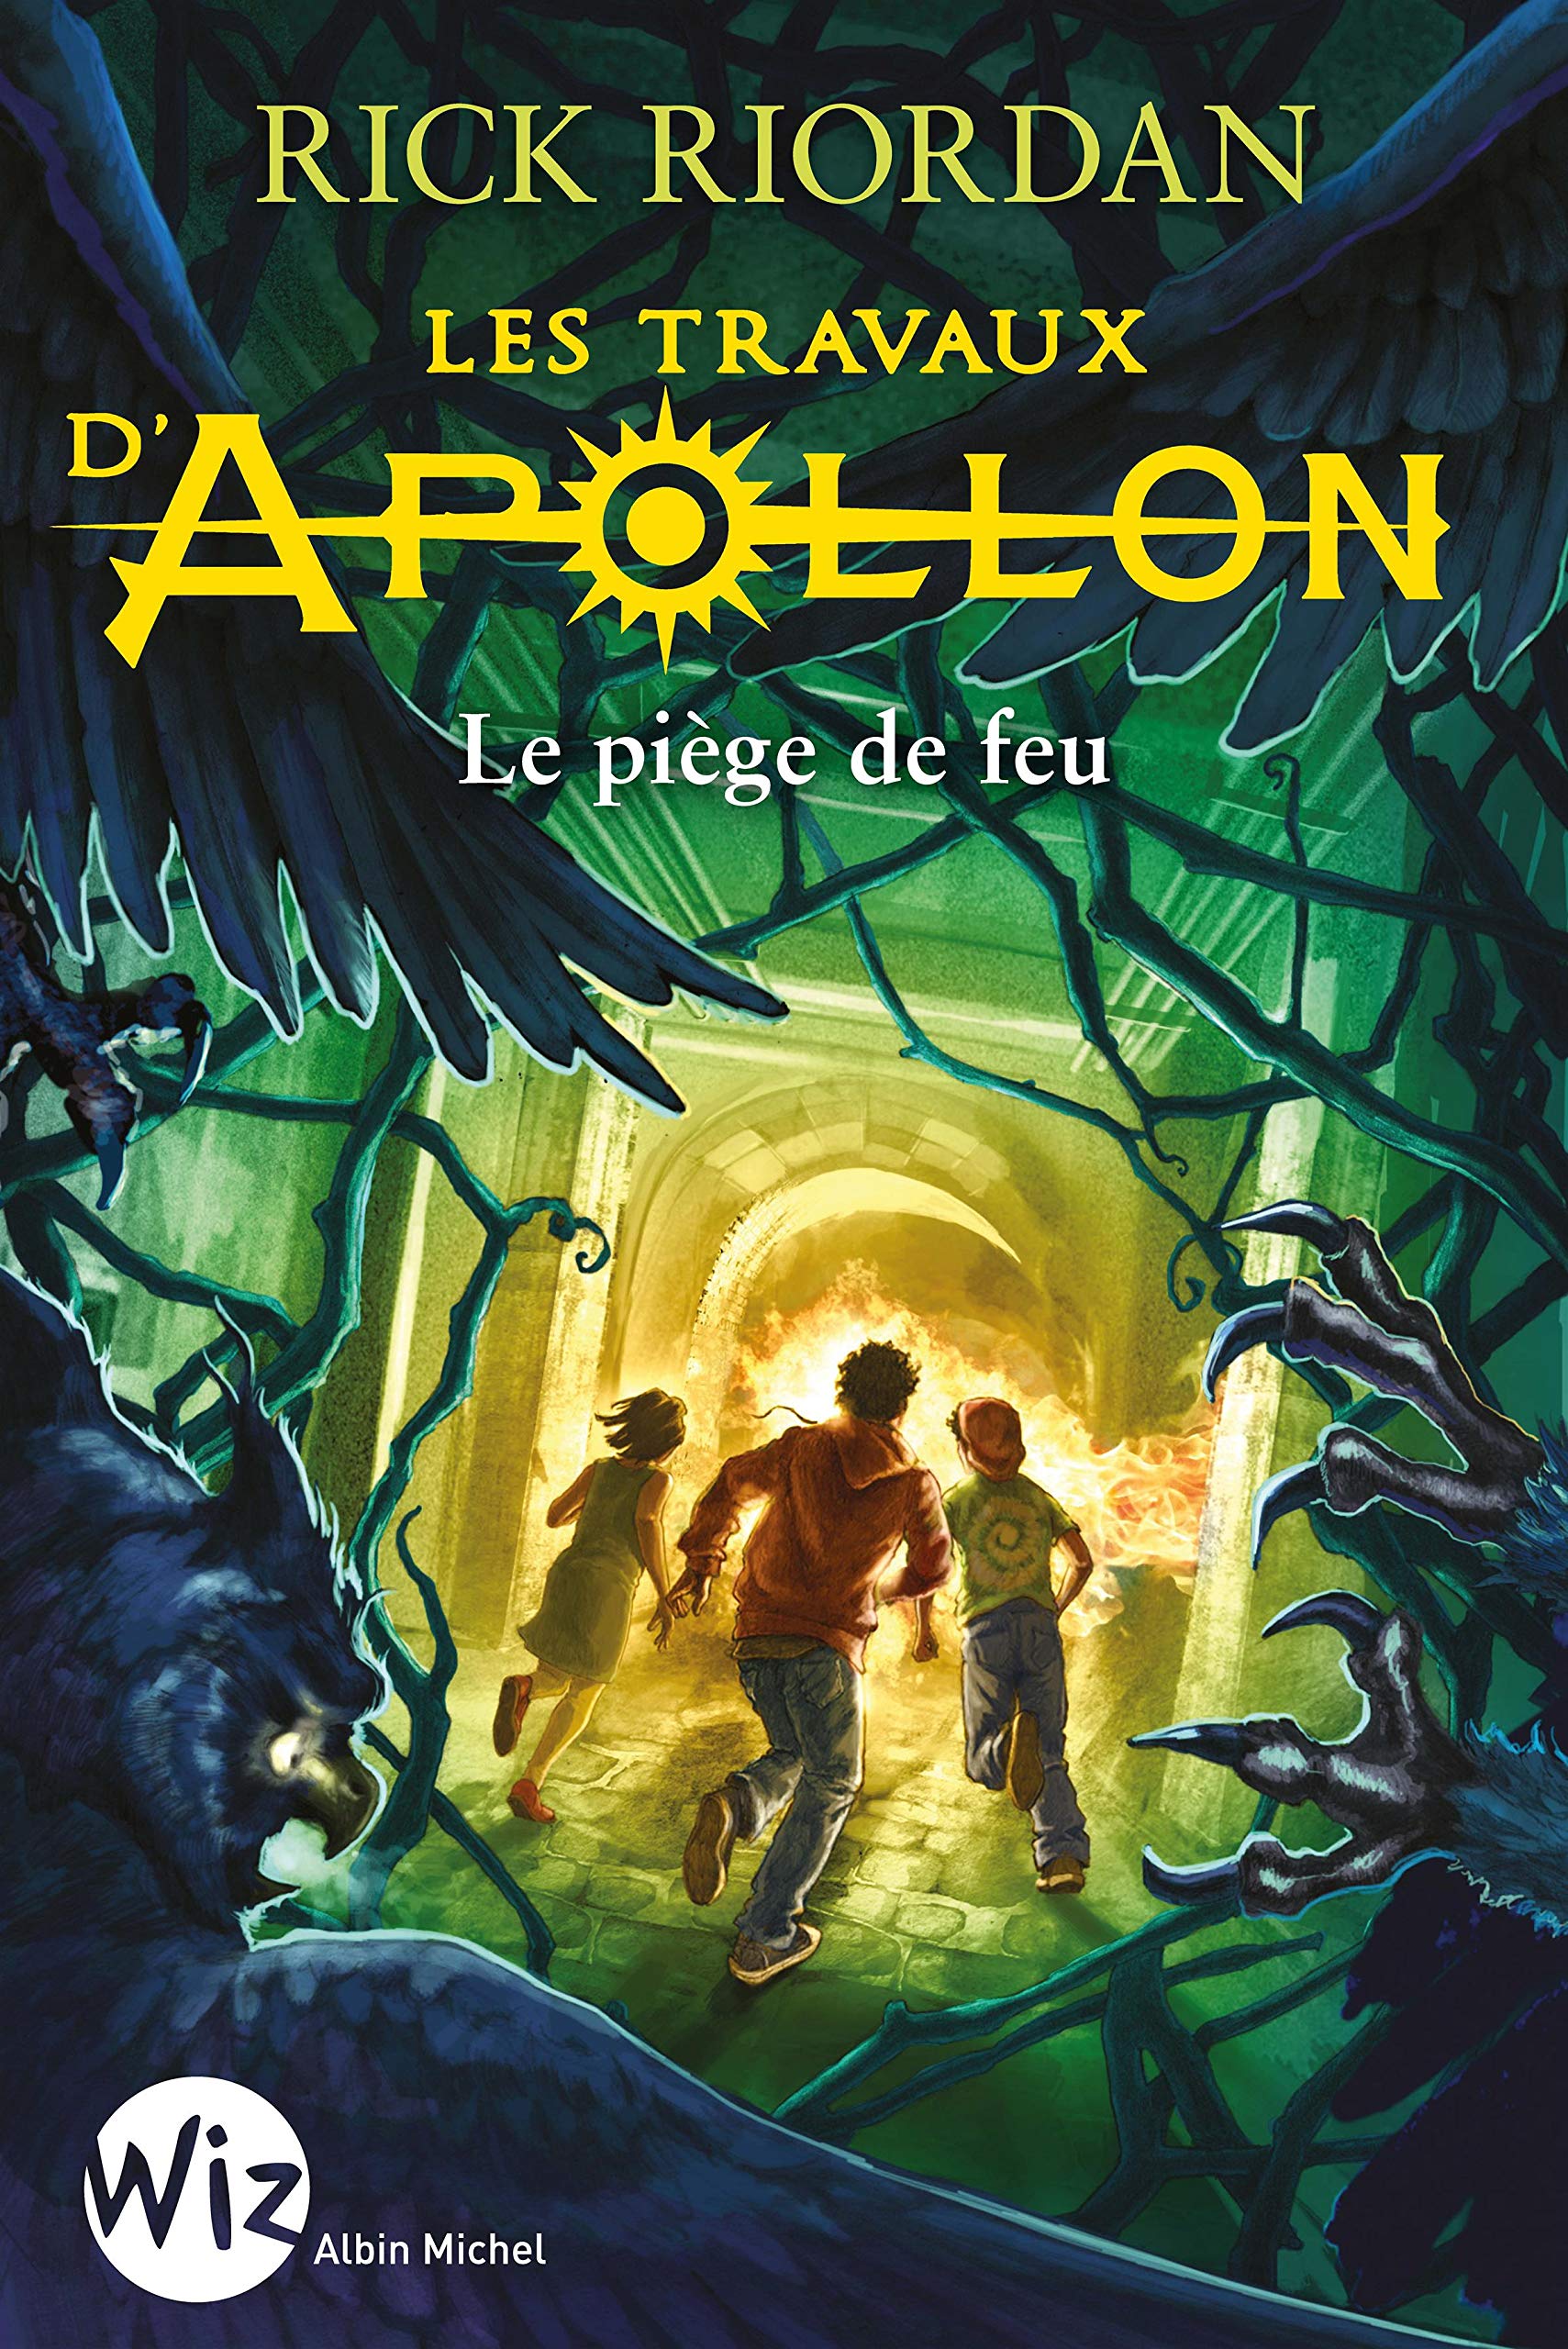 Couverture du troisième tome de la série Les travaux d'Apollon de Rick Riordan intitulé Le piège de feu